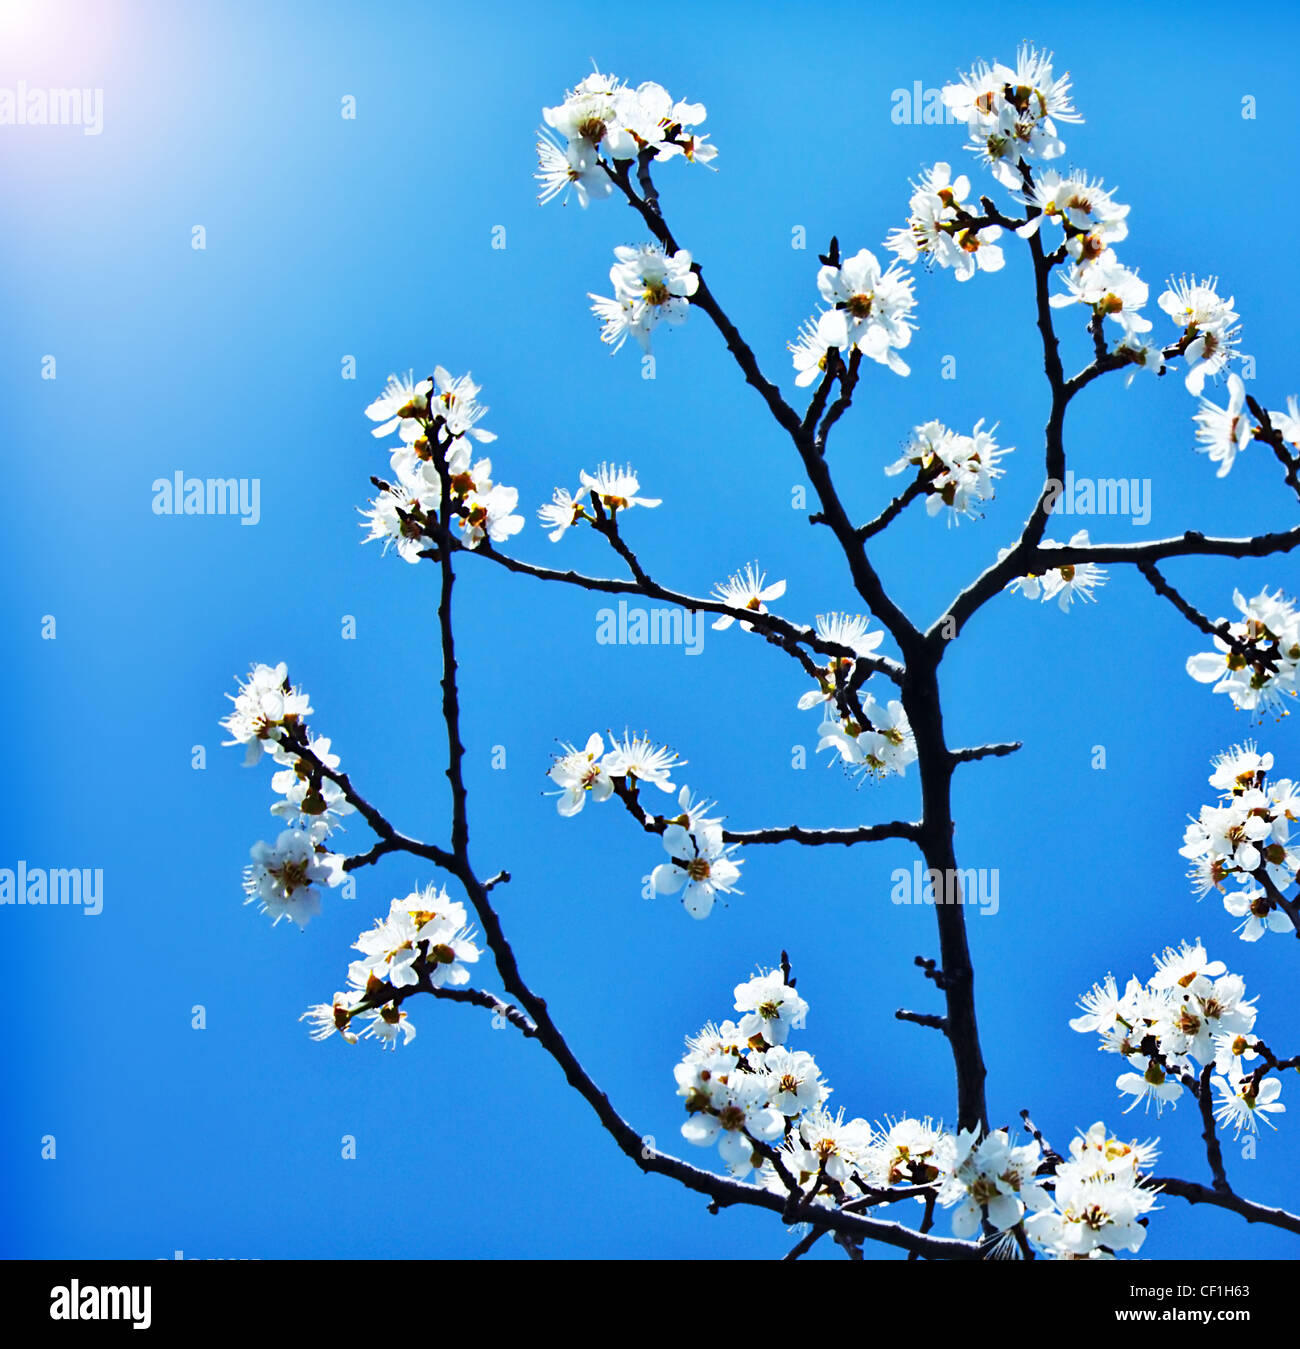 Blühender Baum im Frühling, frischen weißen Blüten auf dem Zweig der Obstbaum in blauer Himmel, Pflanze blühen abstrakten floralen Hintergrund Stockfoto